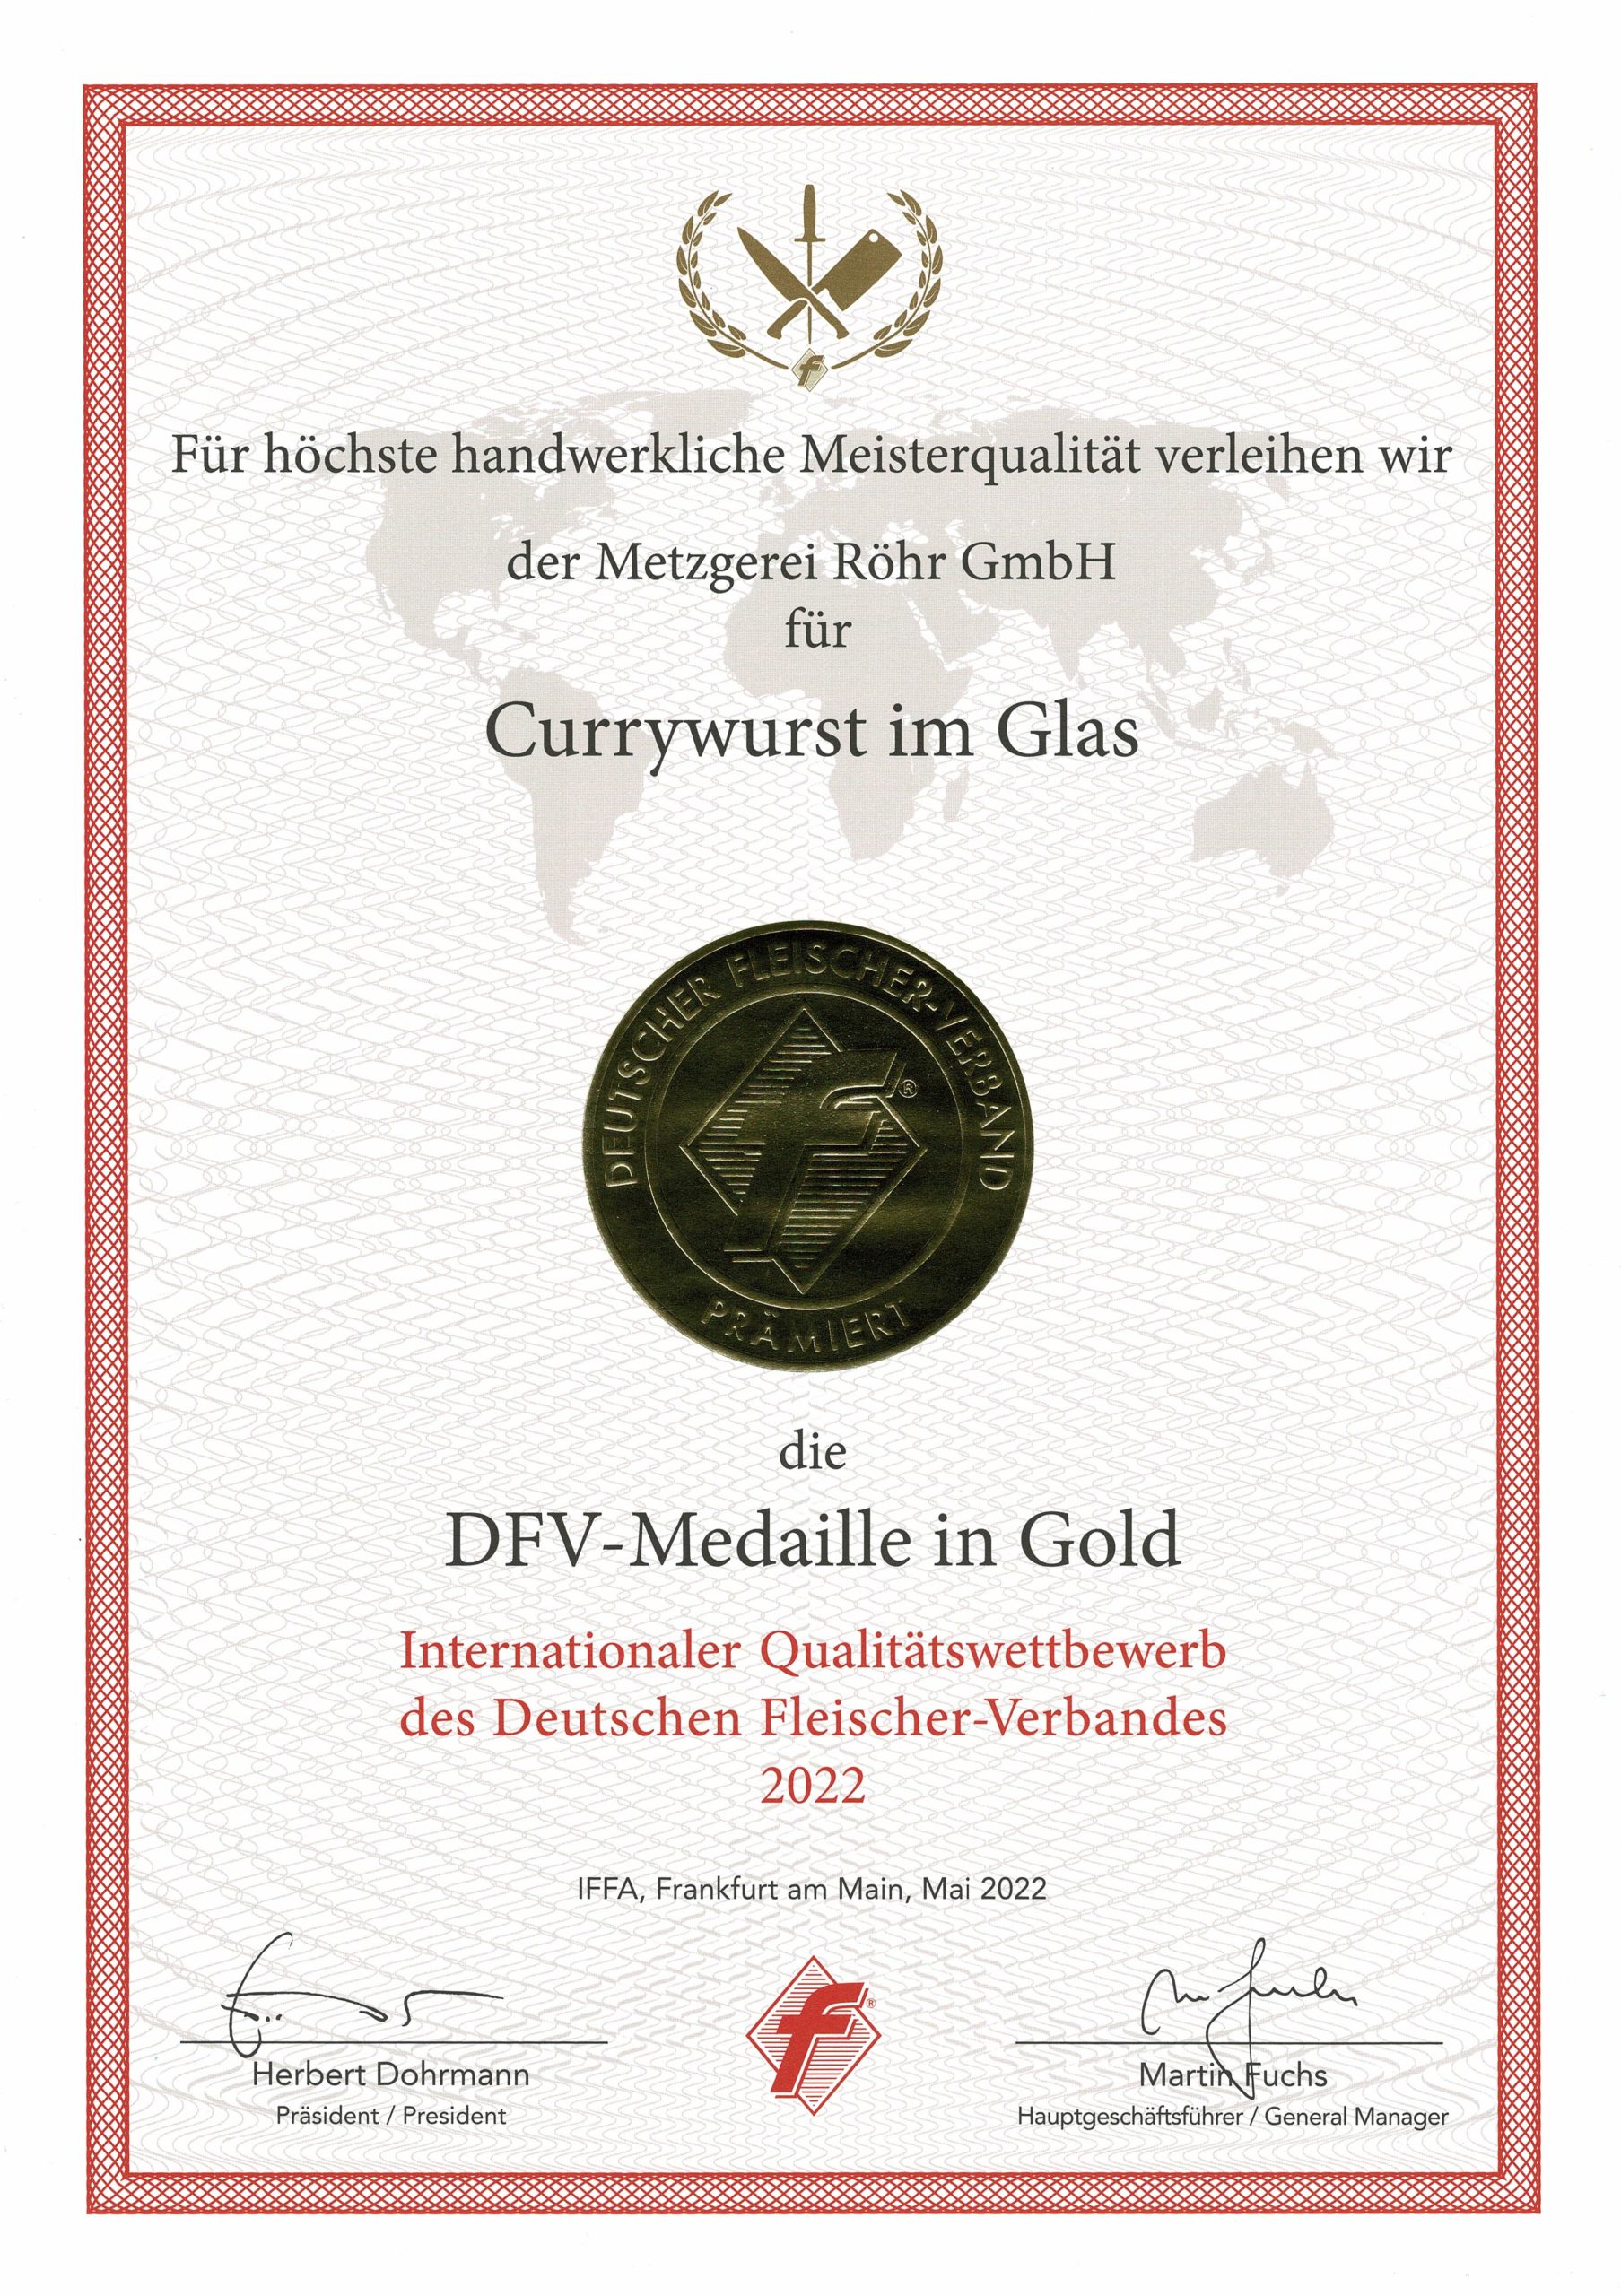 DFV-Medaille in Gold für Currywurst im Glas